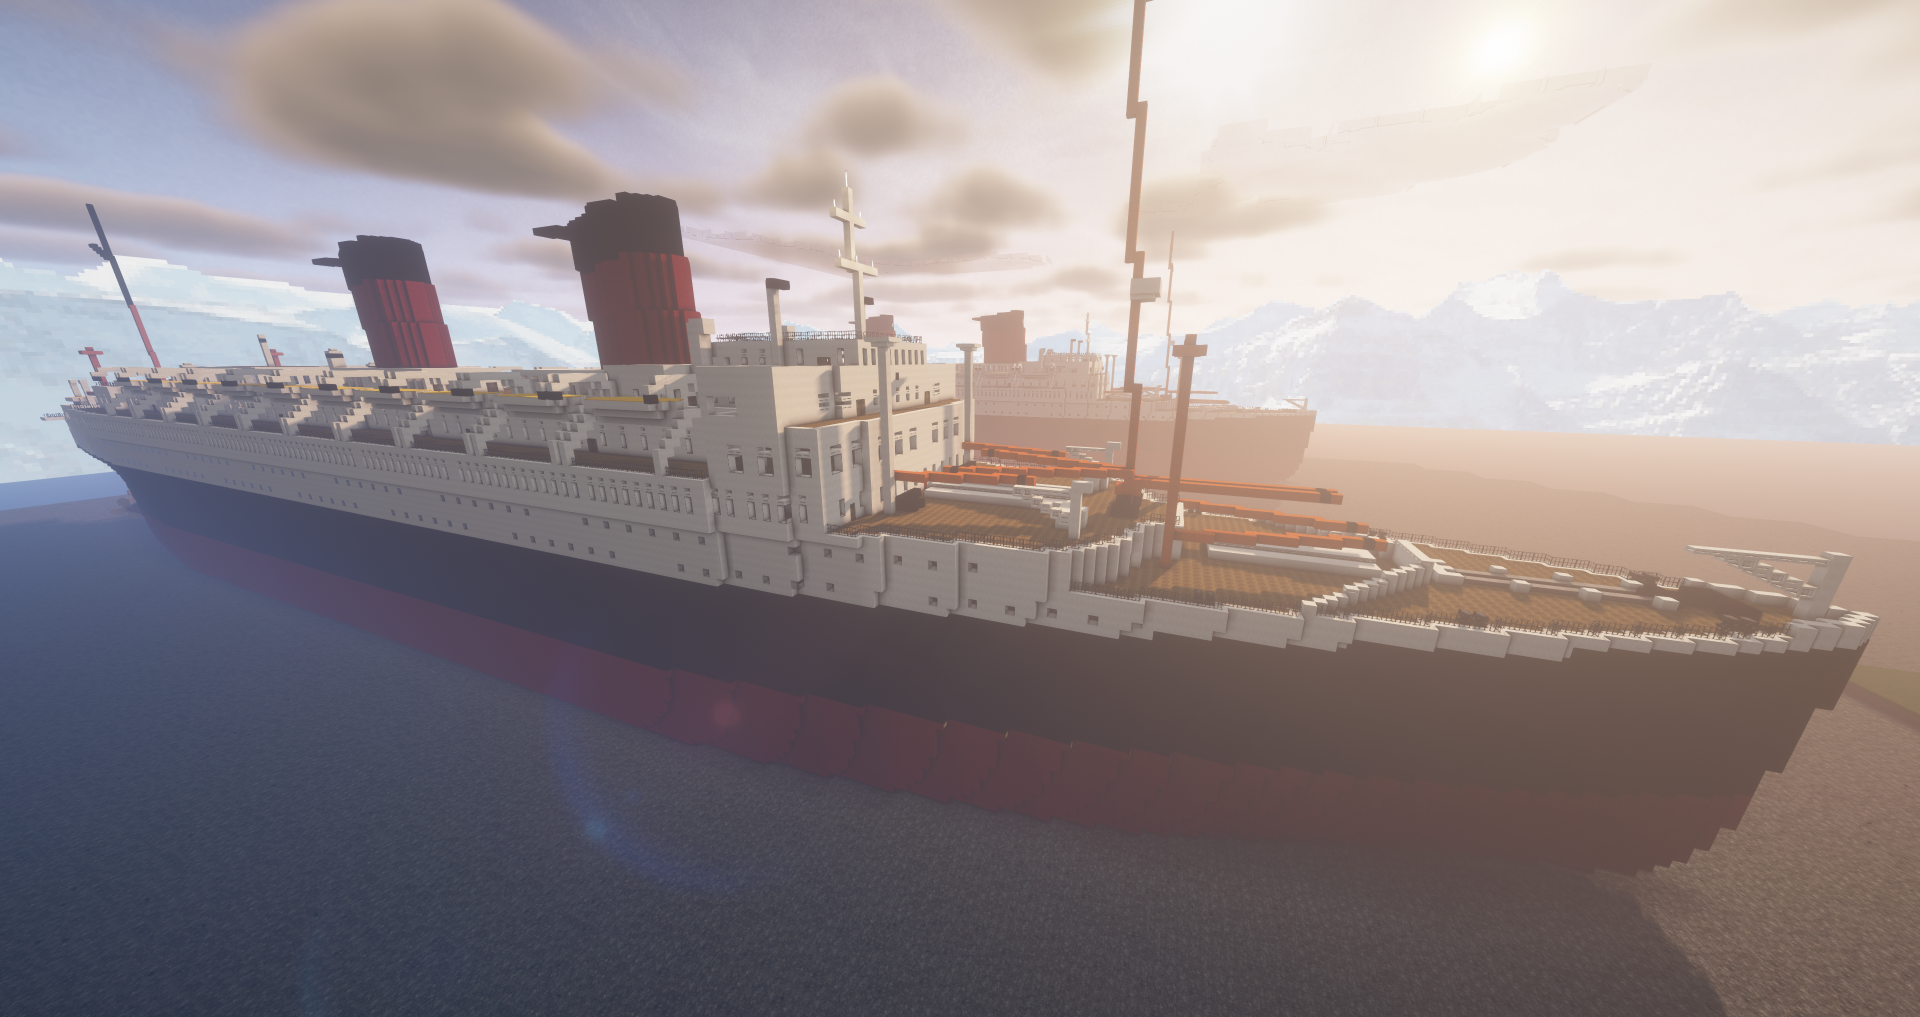 SS Île de France Minecraft ship build